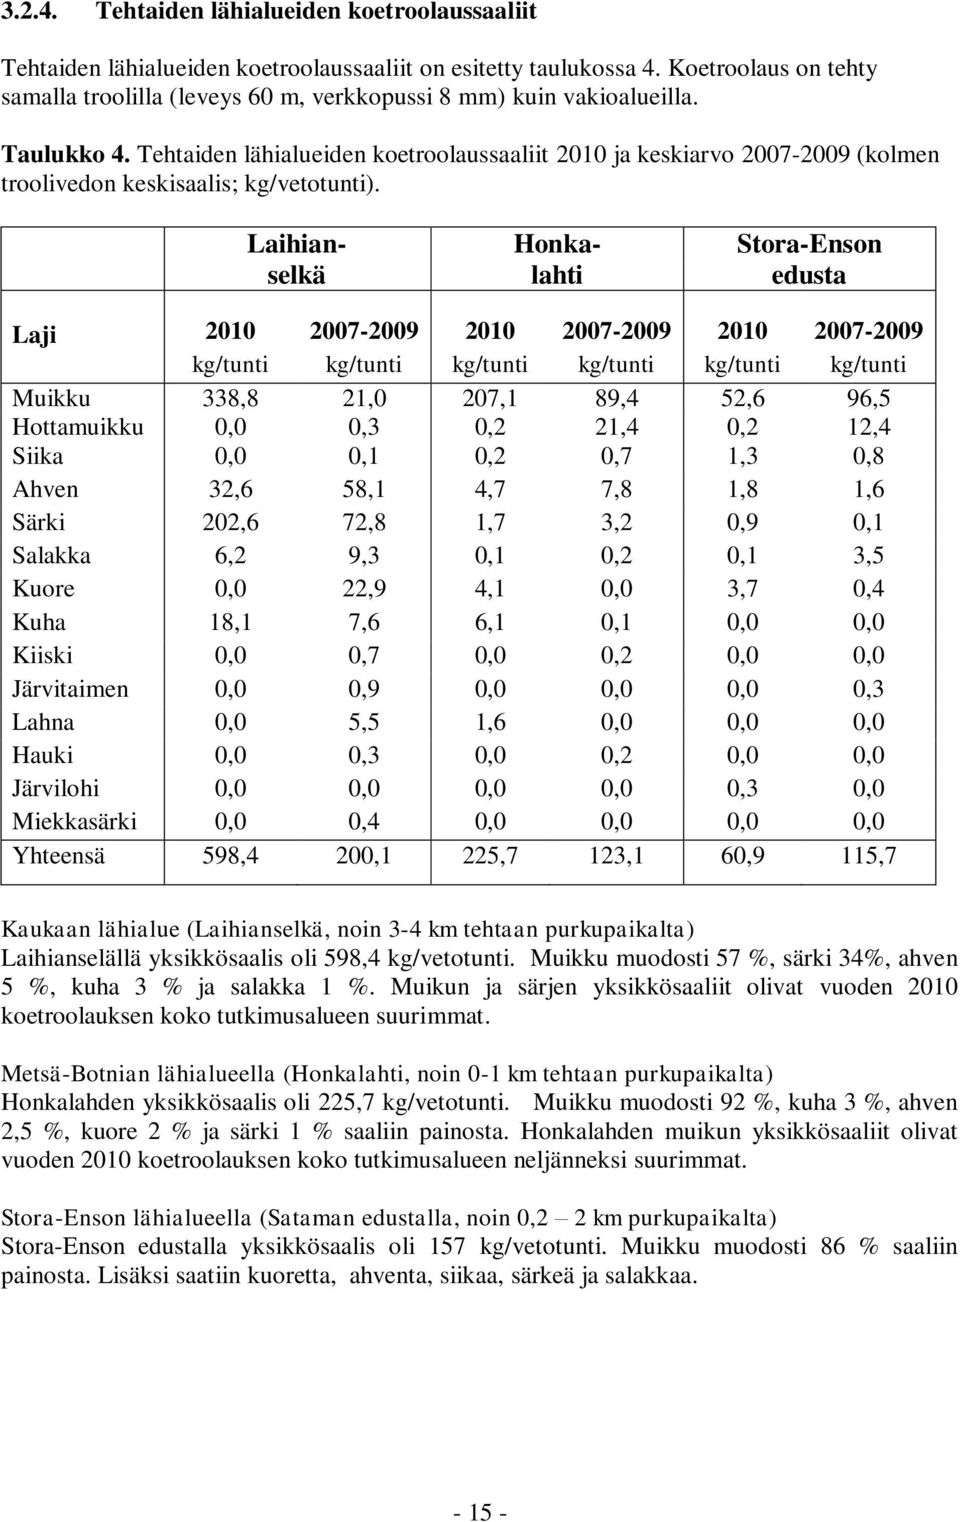 Tehtaiden lähialueiden koetroolaussaaliit 2010 ja keskiarvo 2007-2009 (kolmen troolivedon keskisaalis; kg/vetotunti).